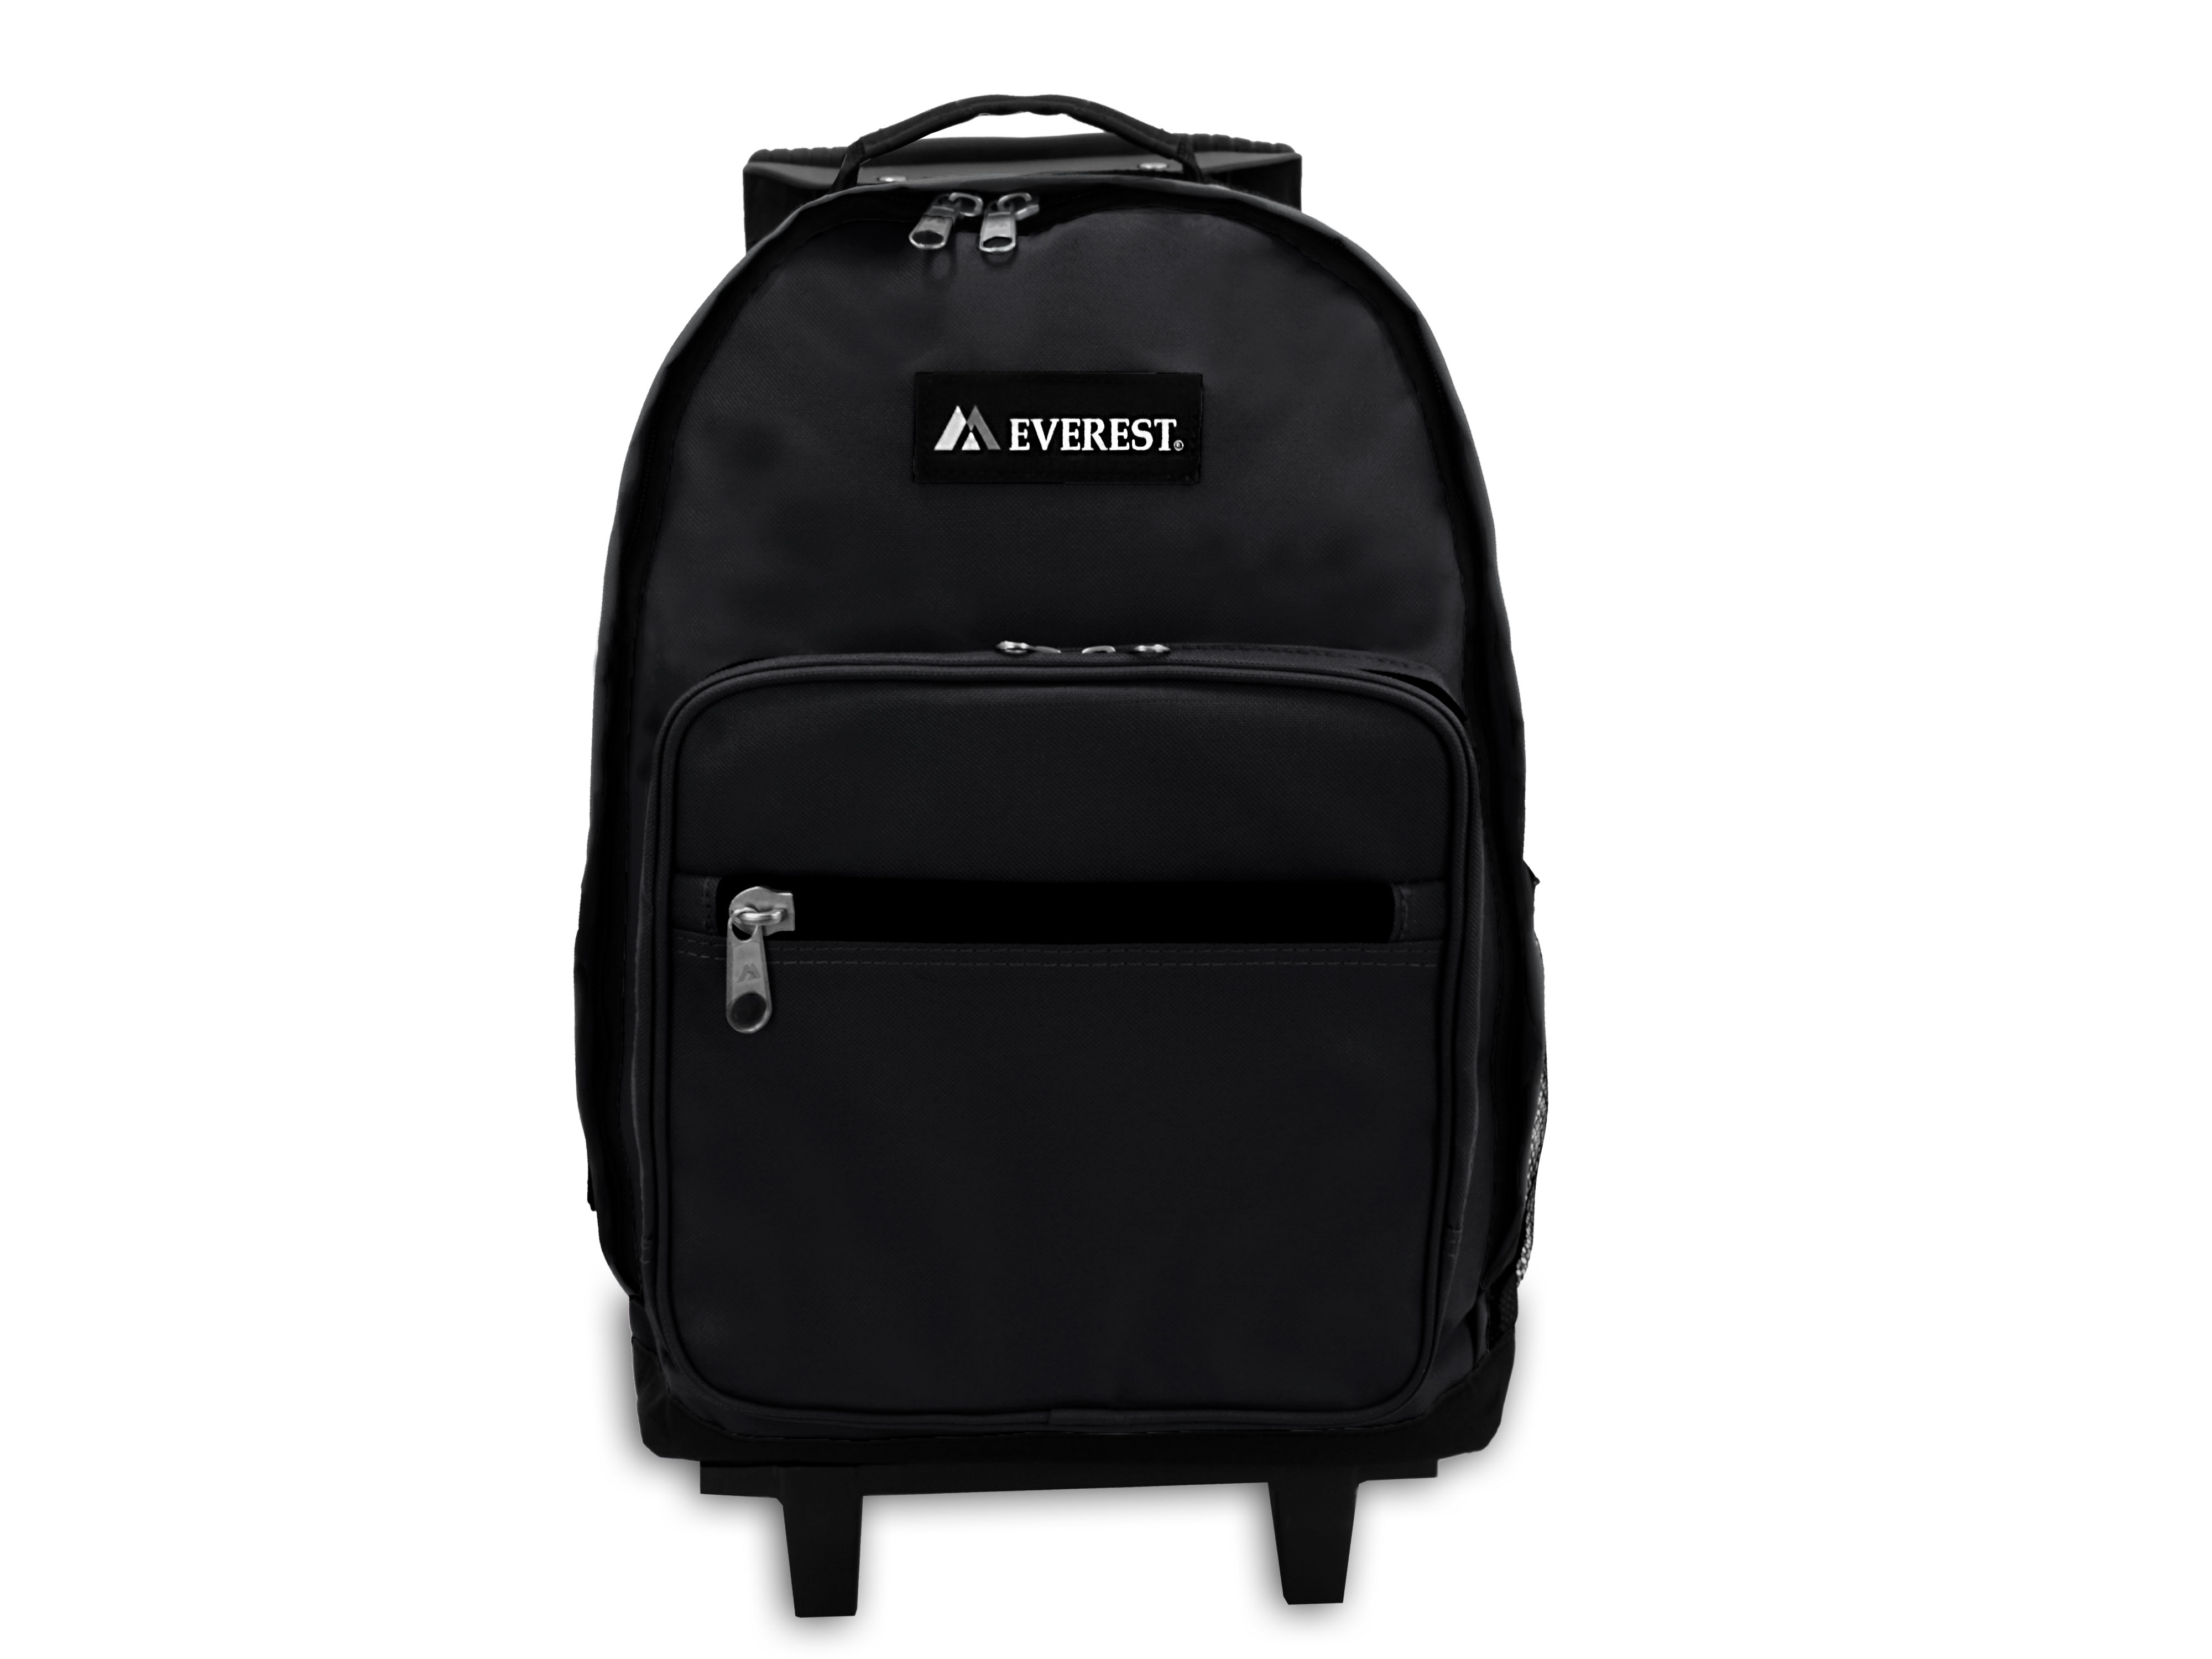 Everest Unisex Wheeled Backpack, Black - image 1 of 5